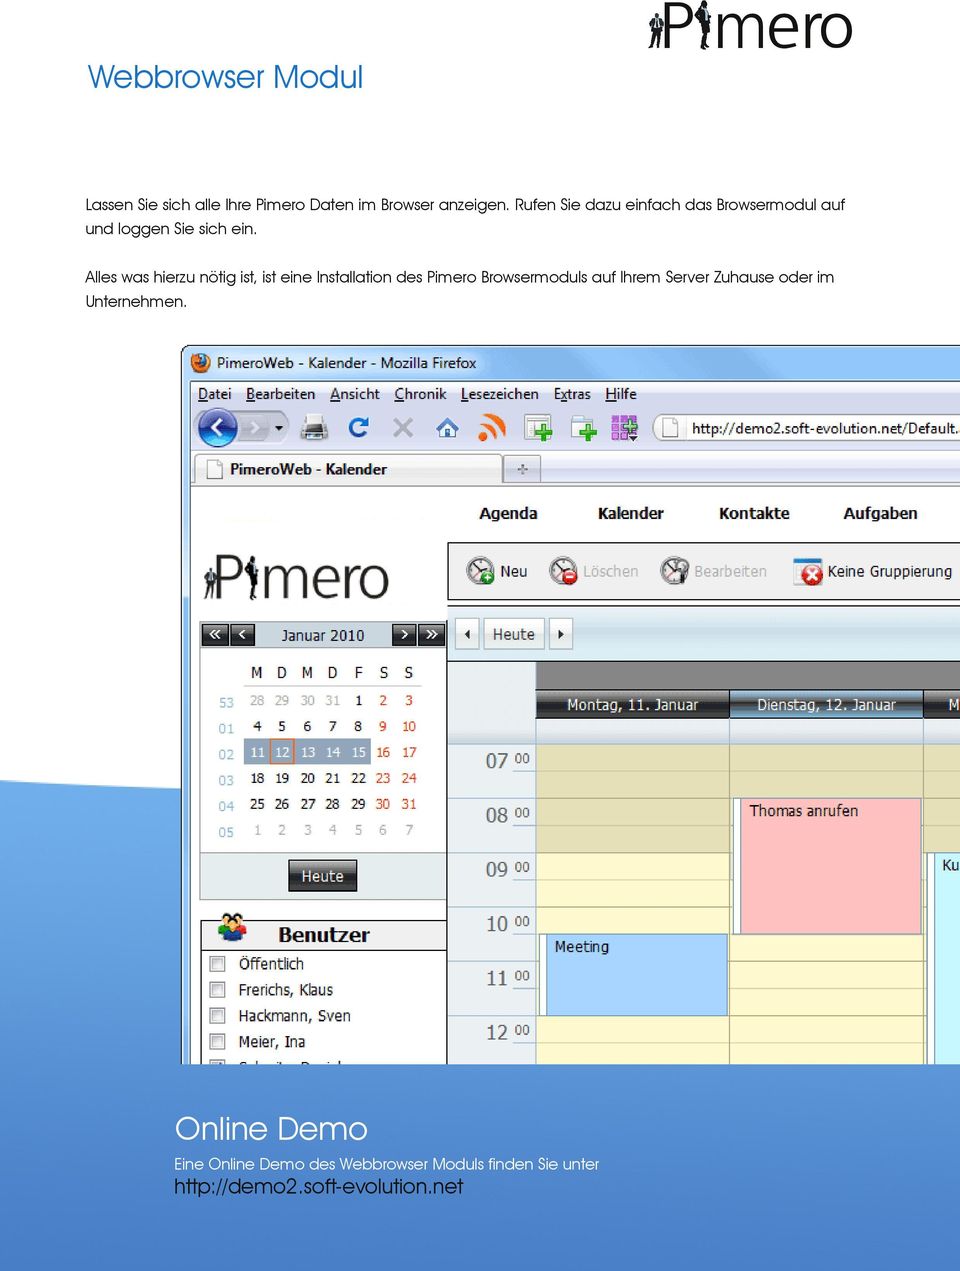 Alles was hierzu nötig ist, ist eine Installation des Pimero Browsermoduls auf Ihrem Server